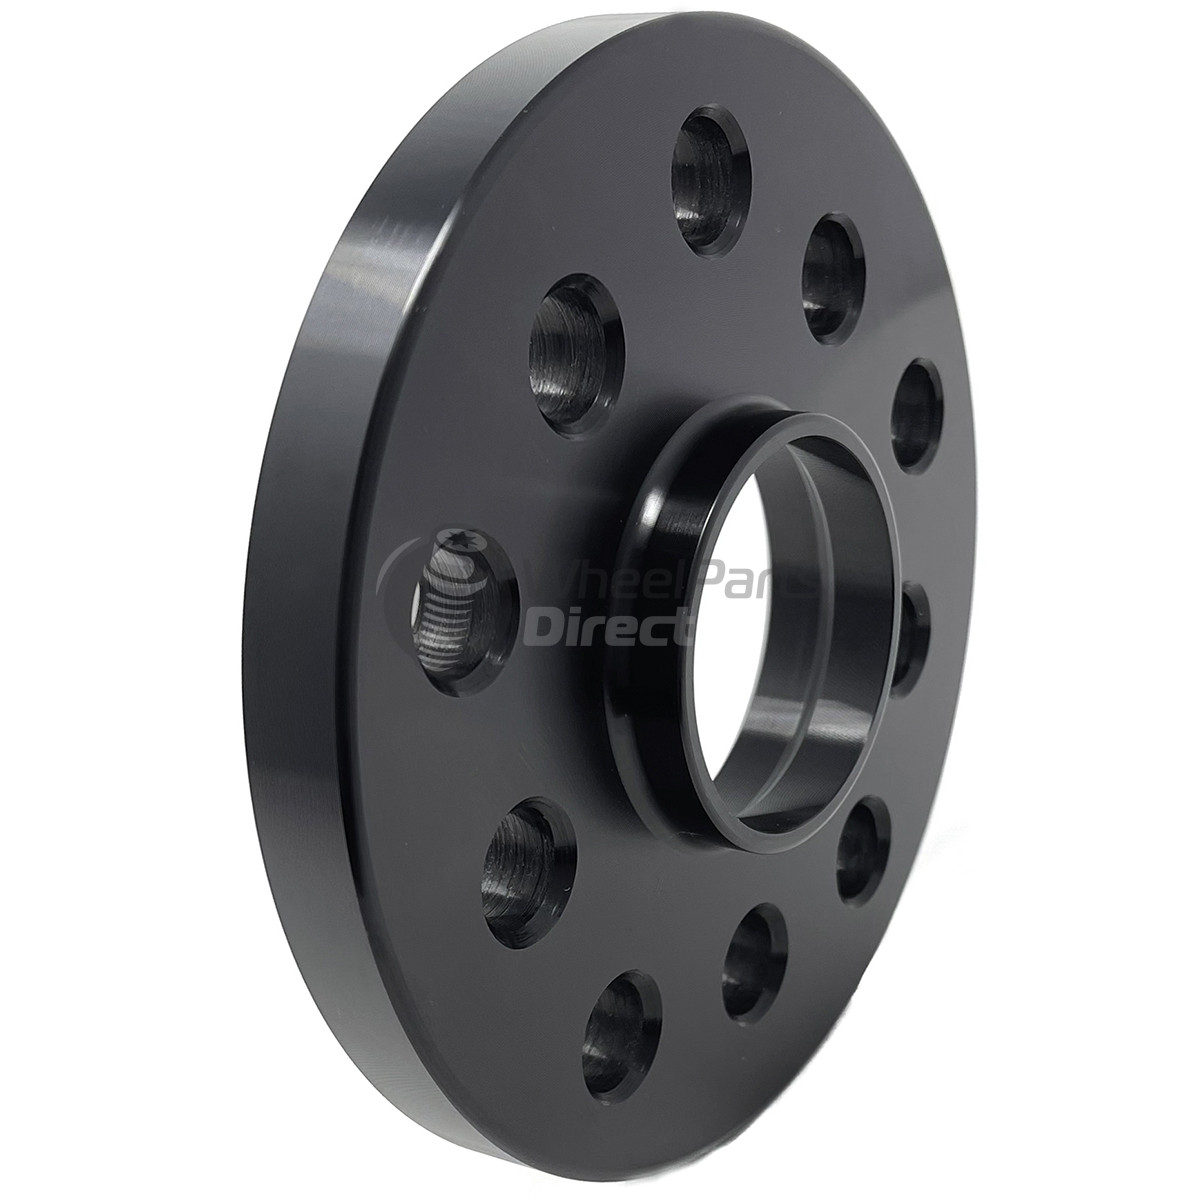 5x114.3 66.1 15mm GEN2 Black Wheel Spacers